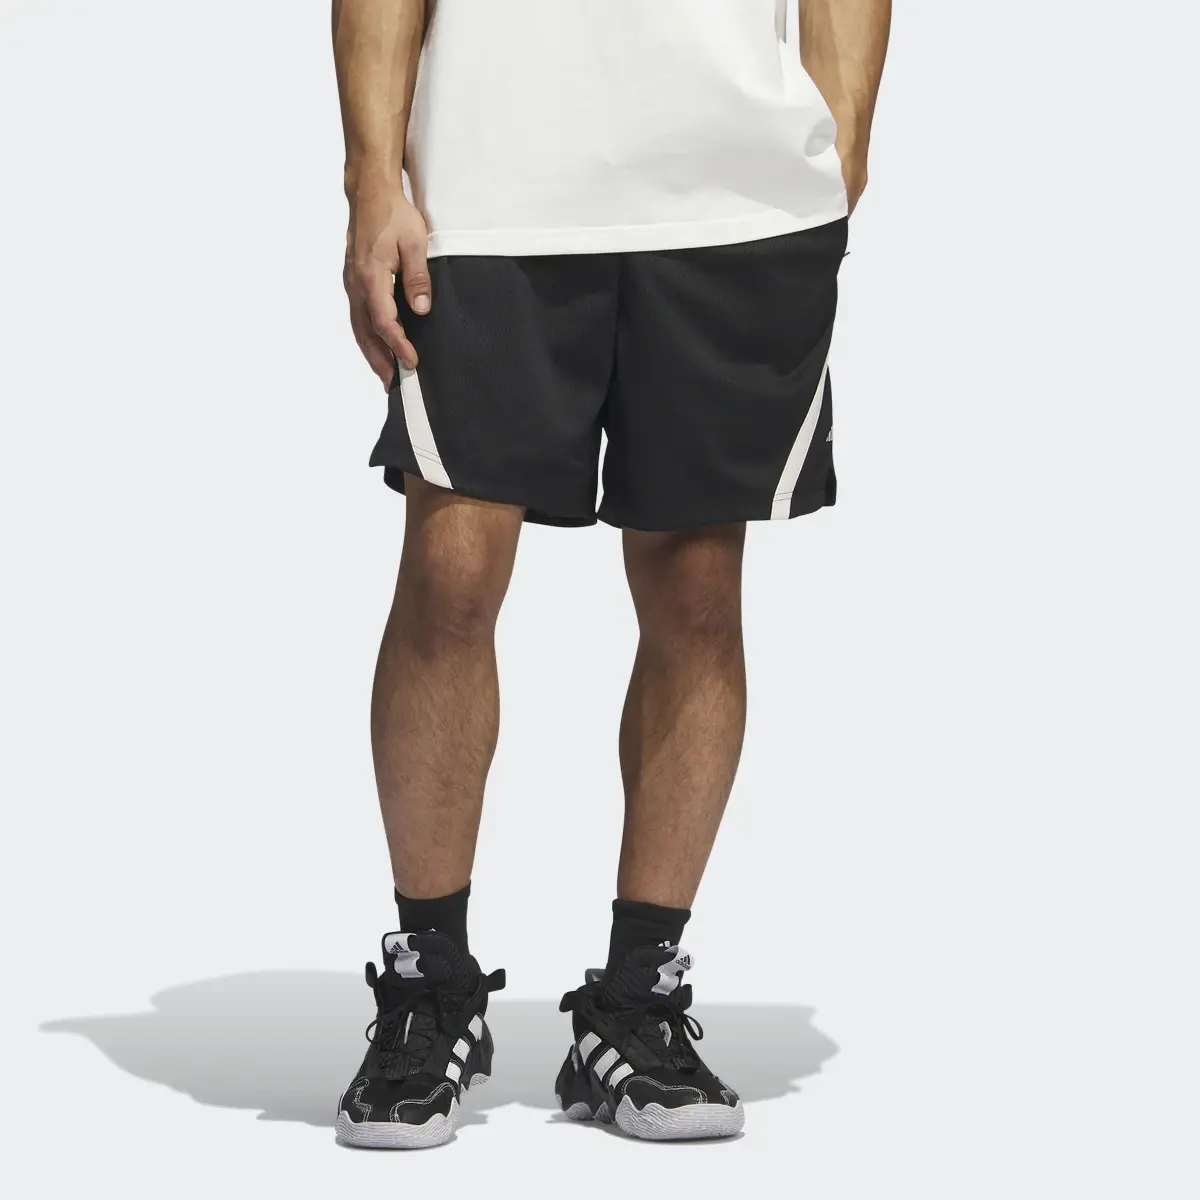 Adidas Select Summer Shorts. 1